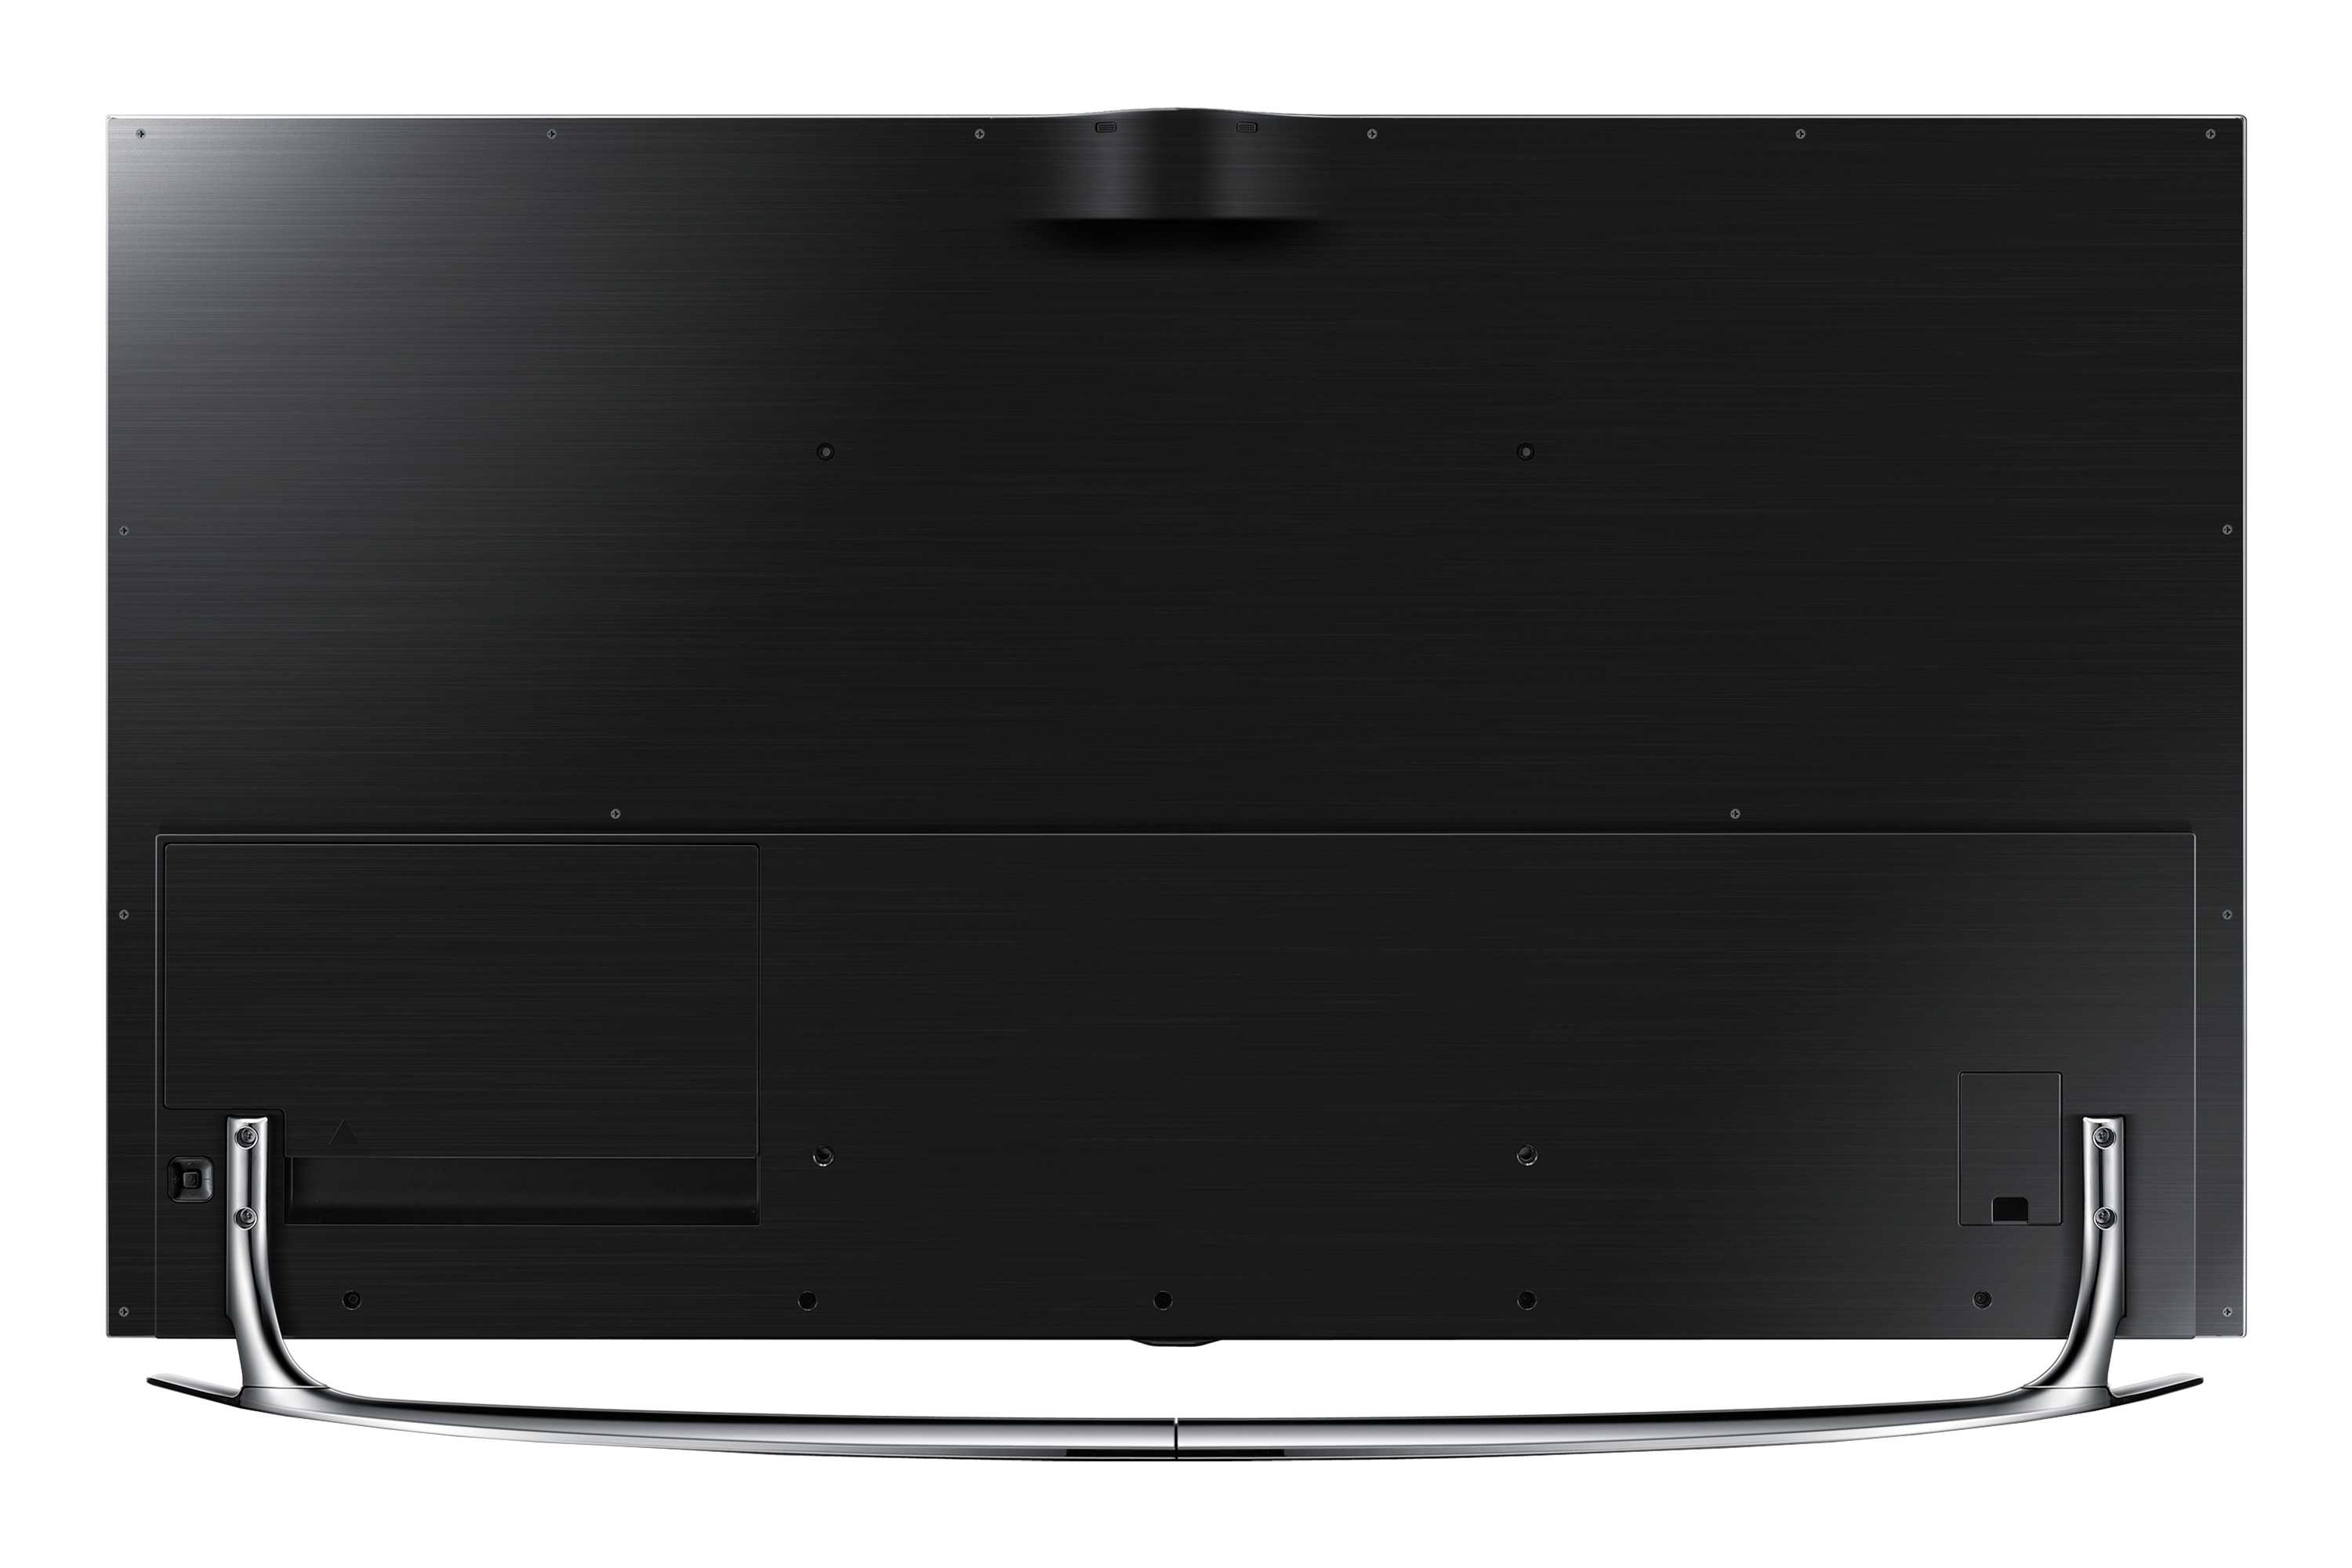 Samsung ue40f8000атx  (черный) - купить , скидки, цена, отзывы, обзор, характеристики - телевизоры